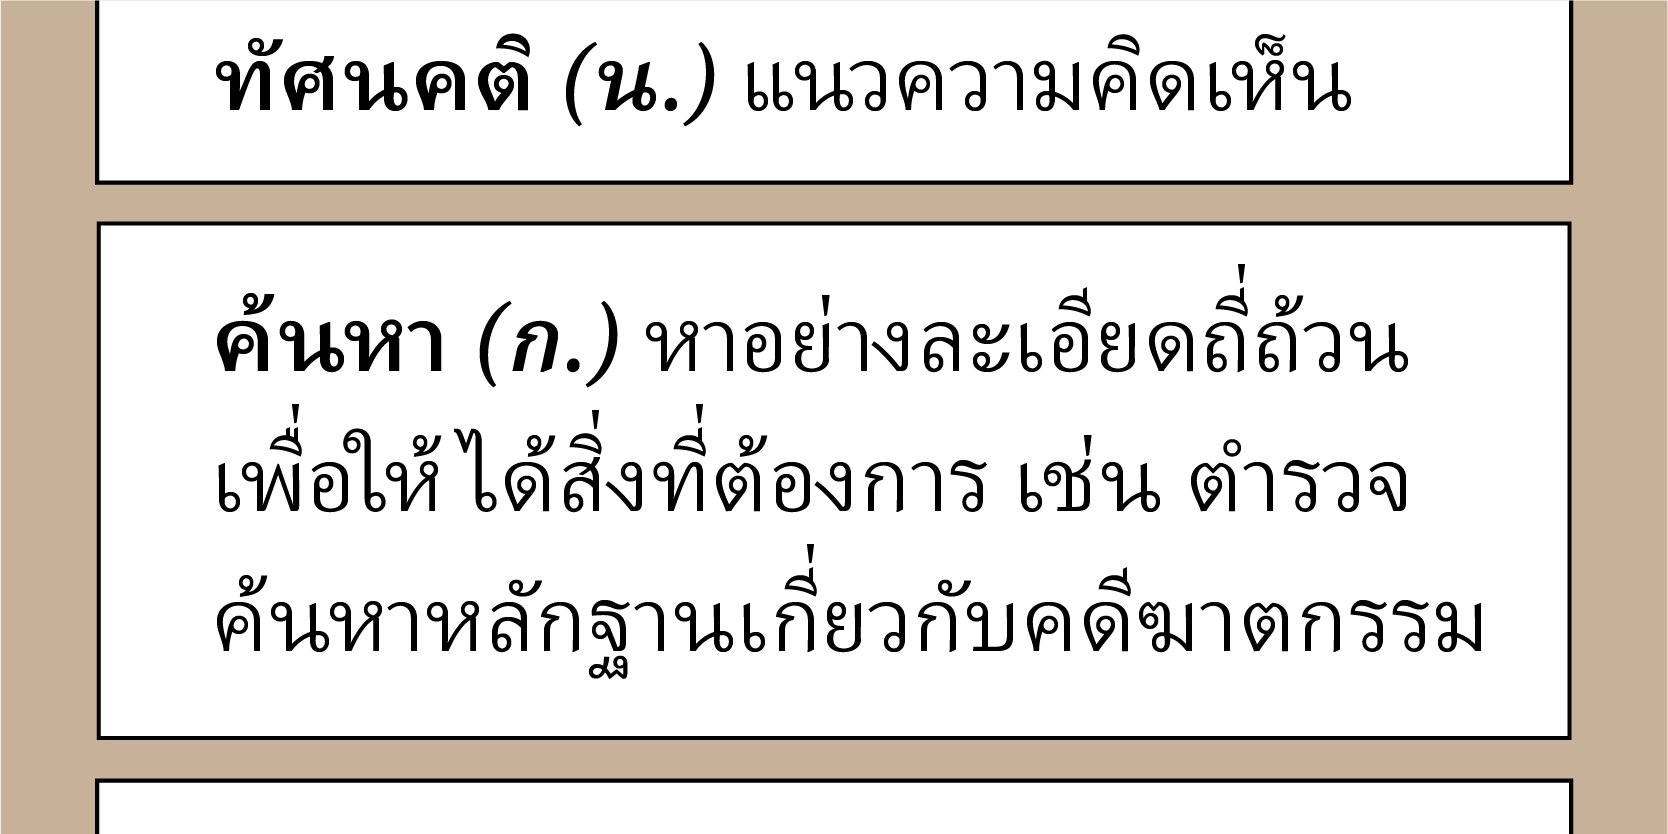 Ejemplo de fuente Adobe Thai Italic